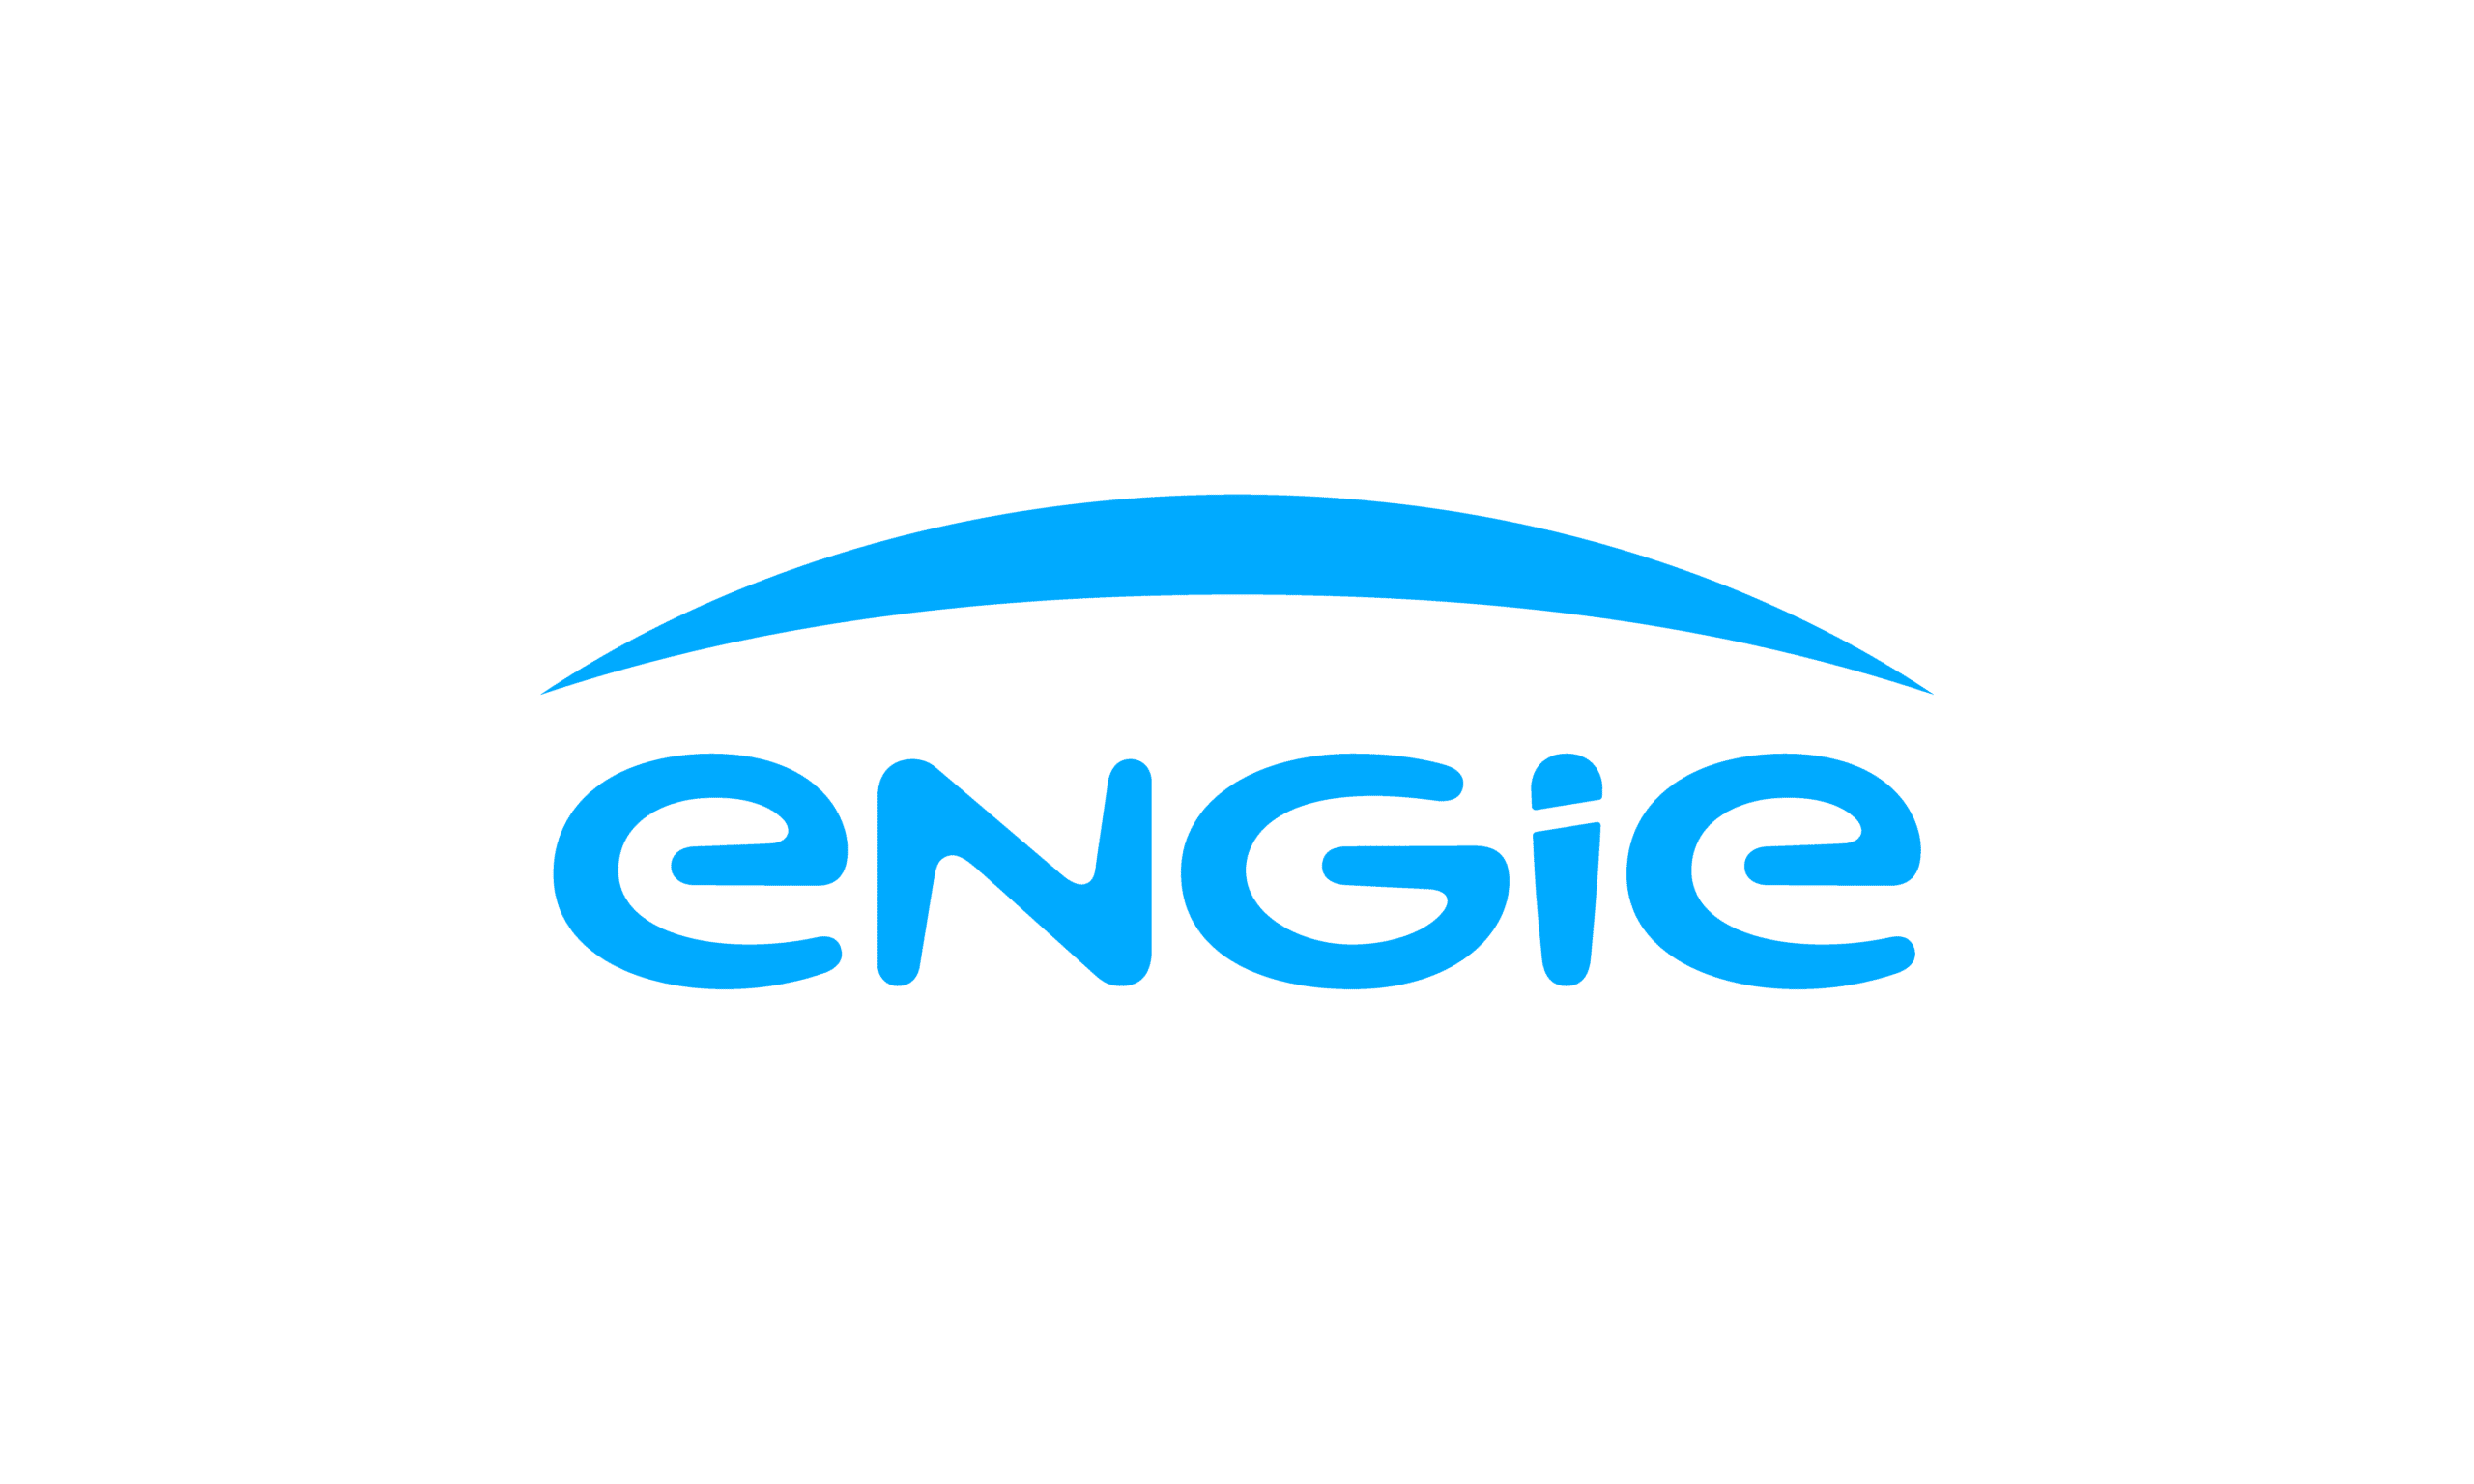 Engie, fournisseur historique de gaz